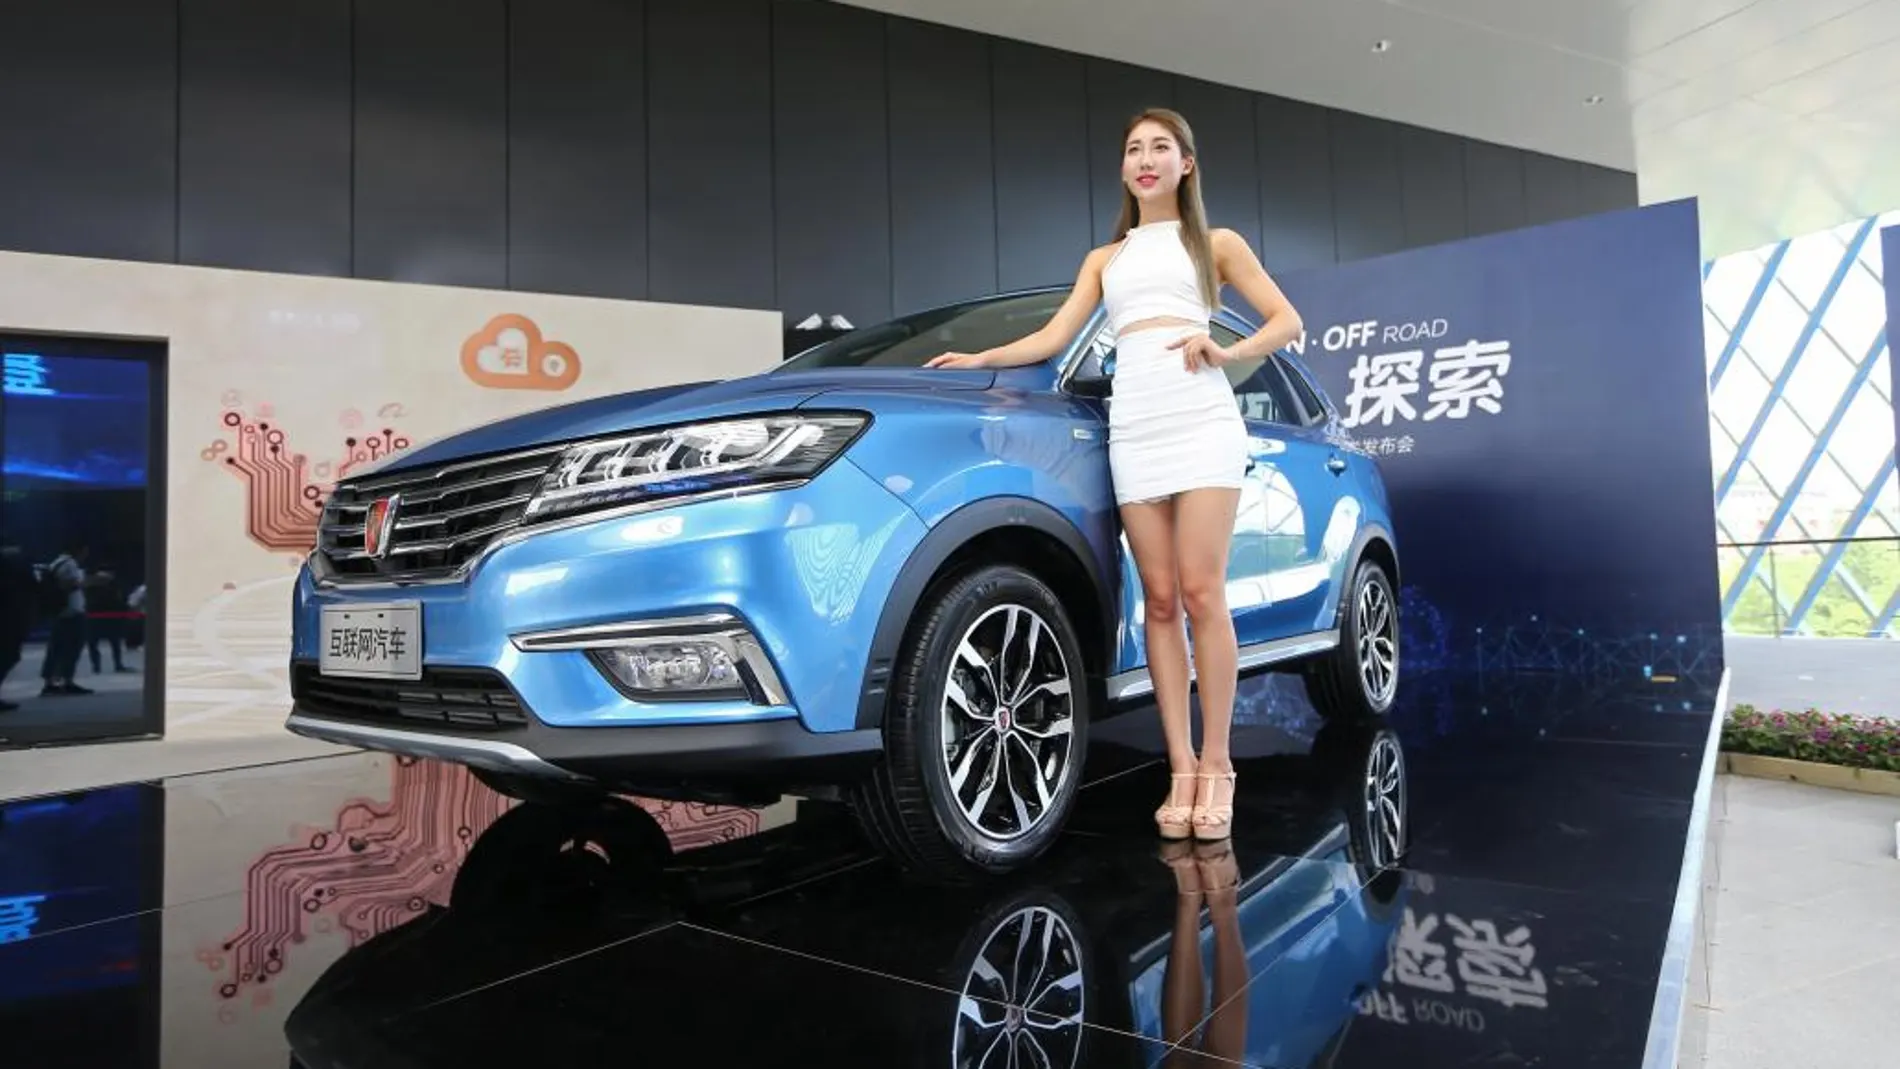 Presentación este miércoles del coche de Alibaba